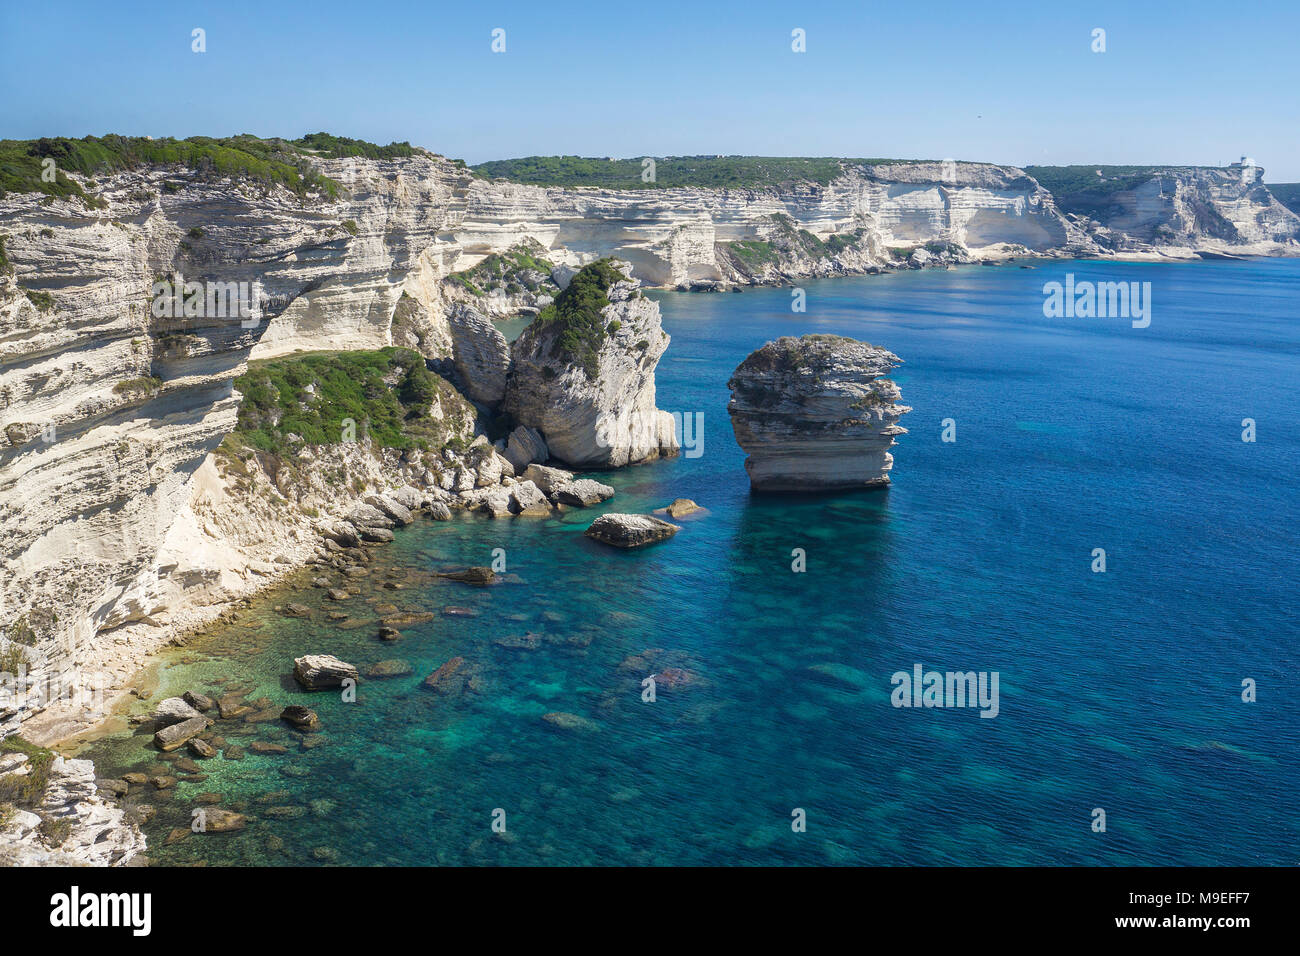 Flèches de calcaire à chalkstone falaise, Bonifacio, Corse, France, Europe, Méditerranée Banque D'Images